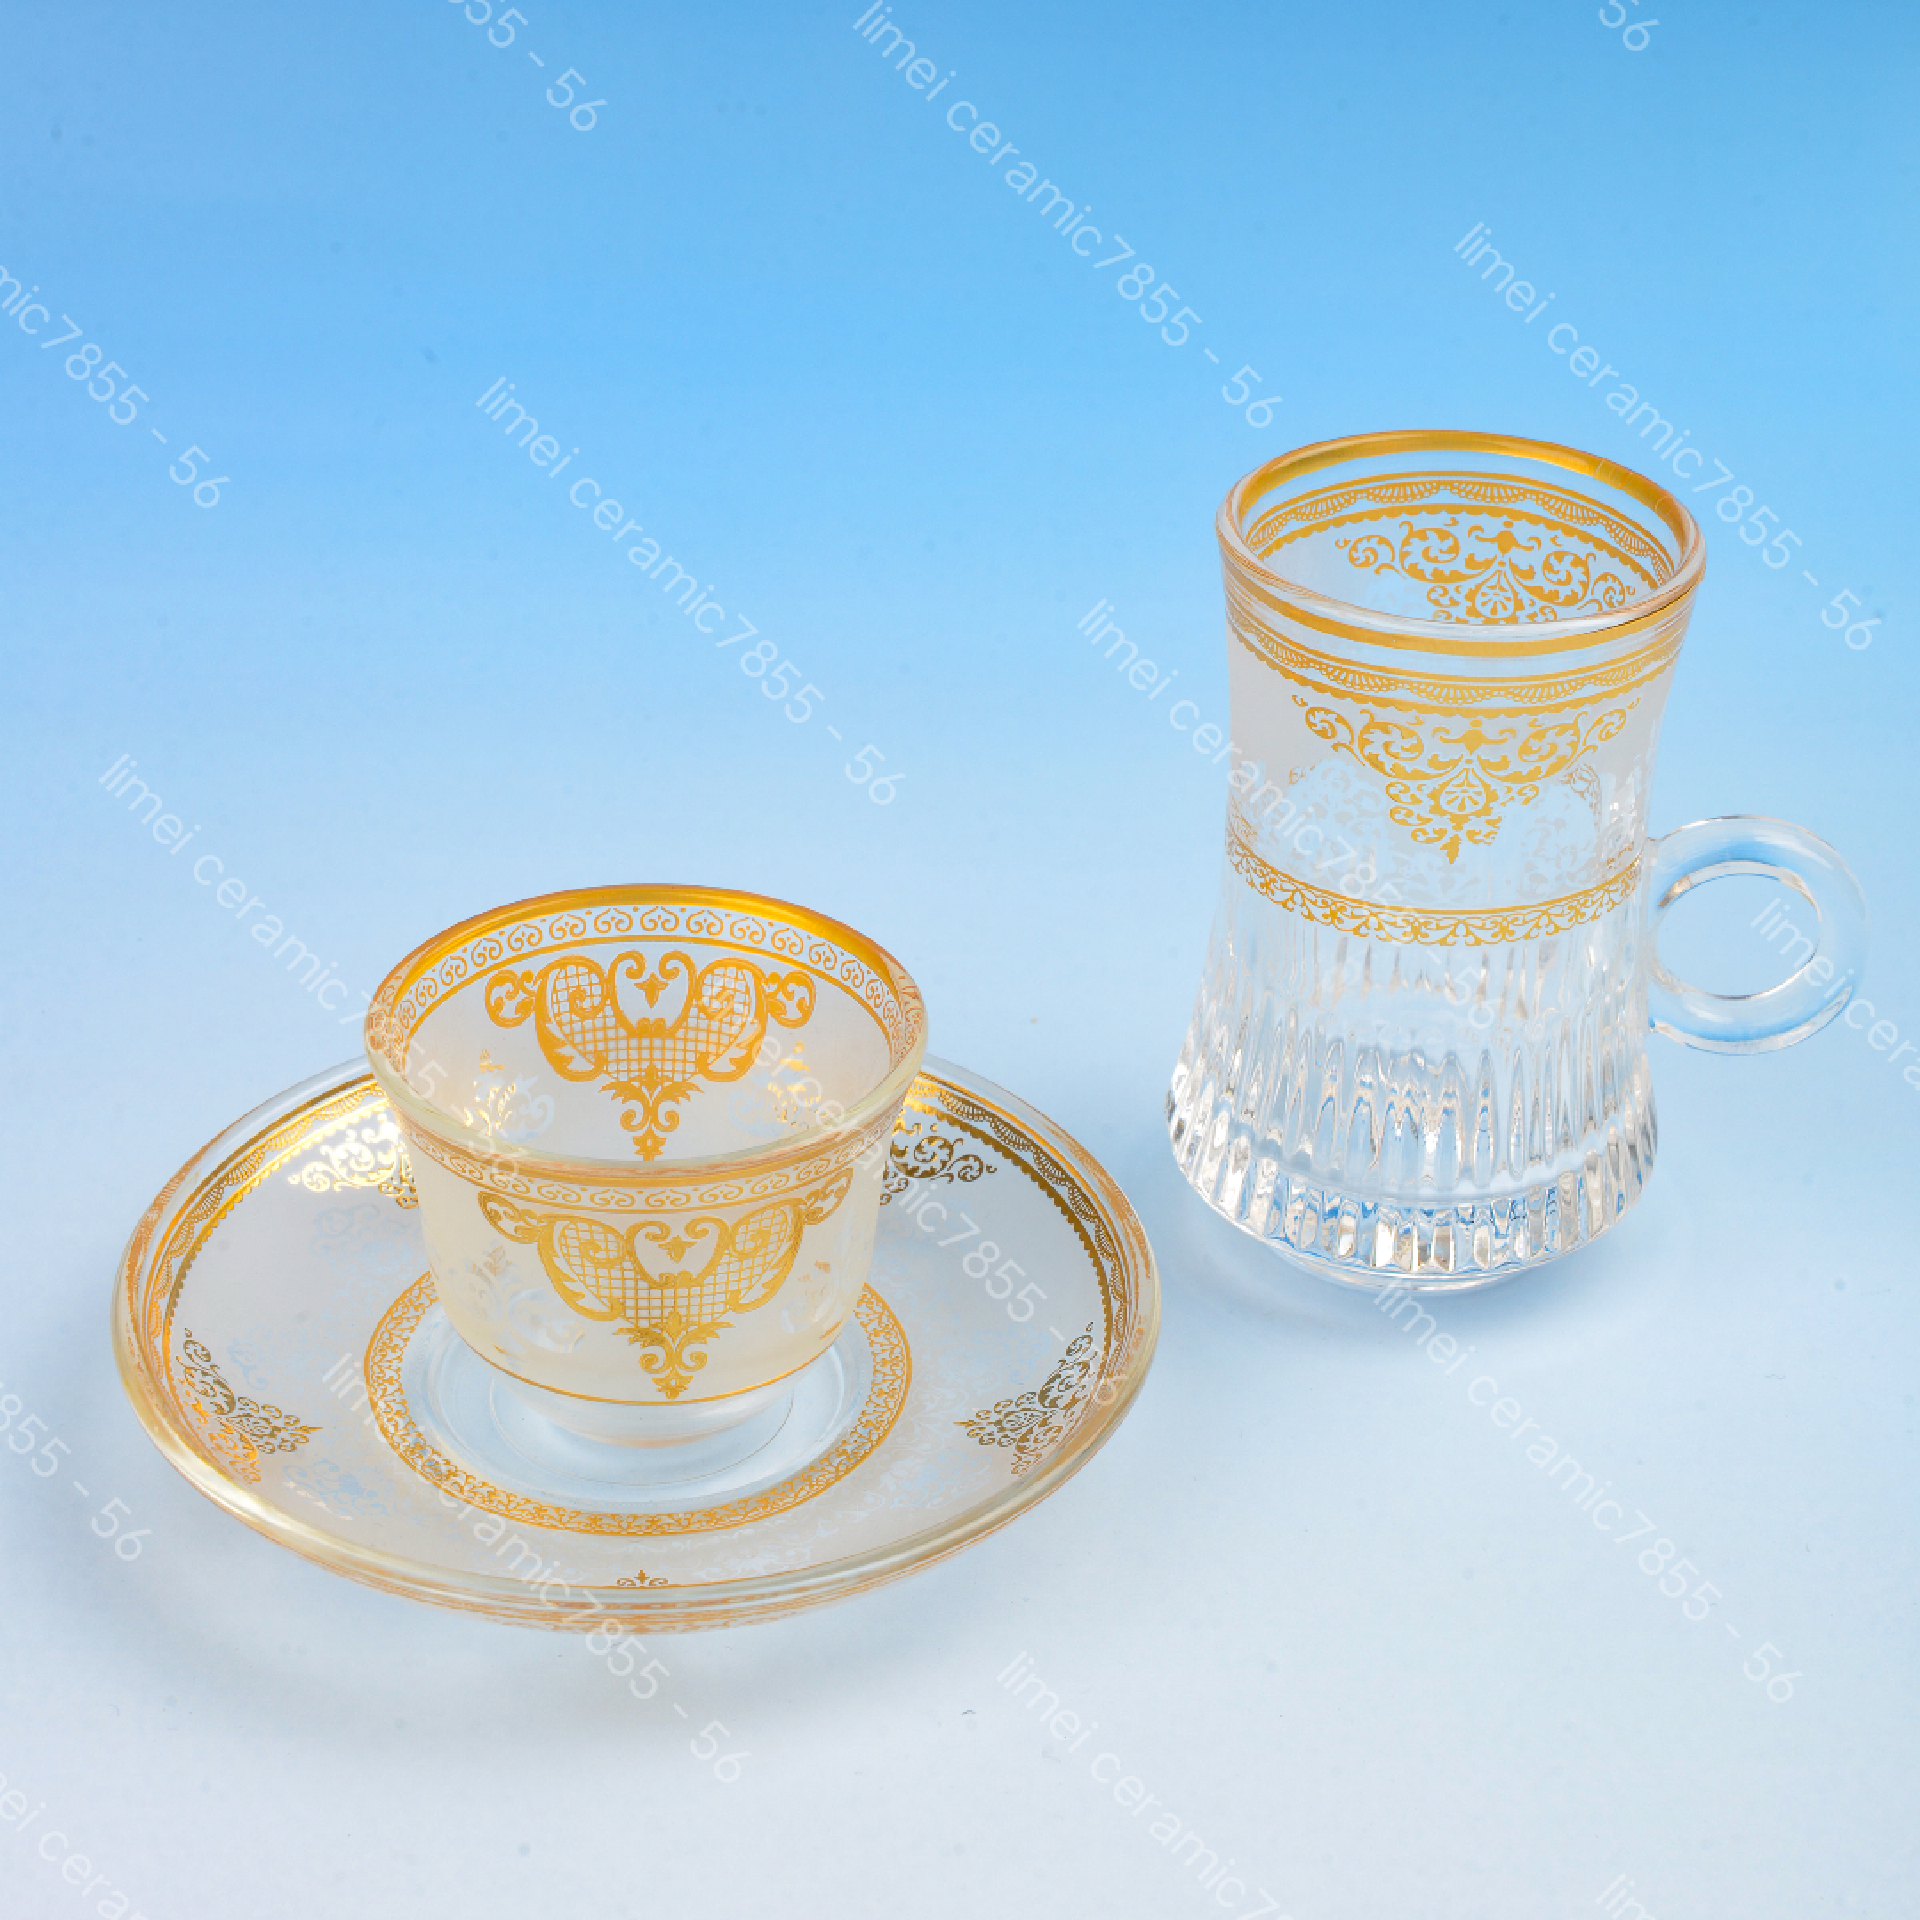 玻璃杯玻璃碟18头月光杯六杯碟礼盒包装出口中东热卖款红茶咖啡杯碟图